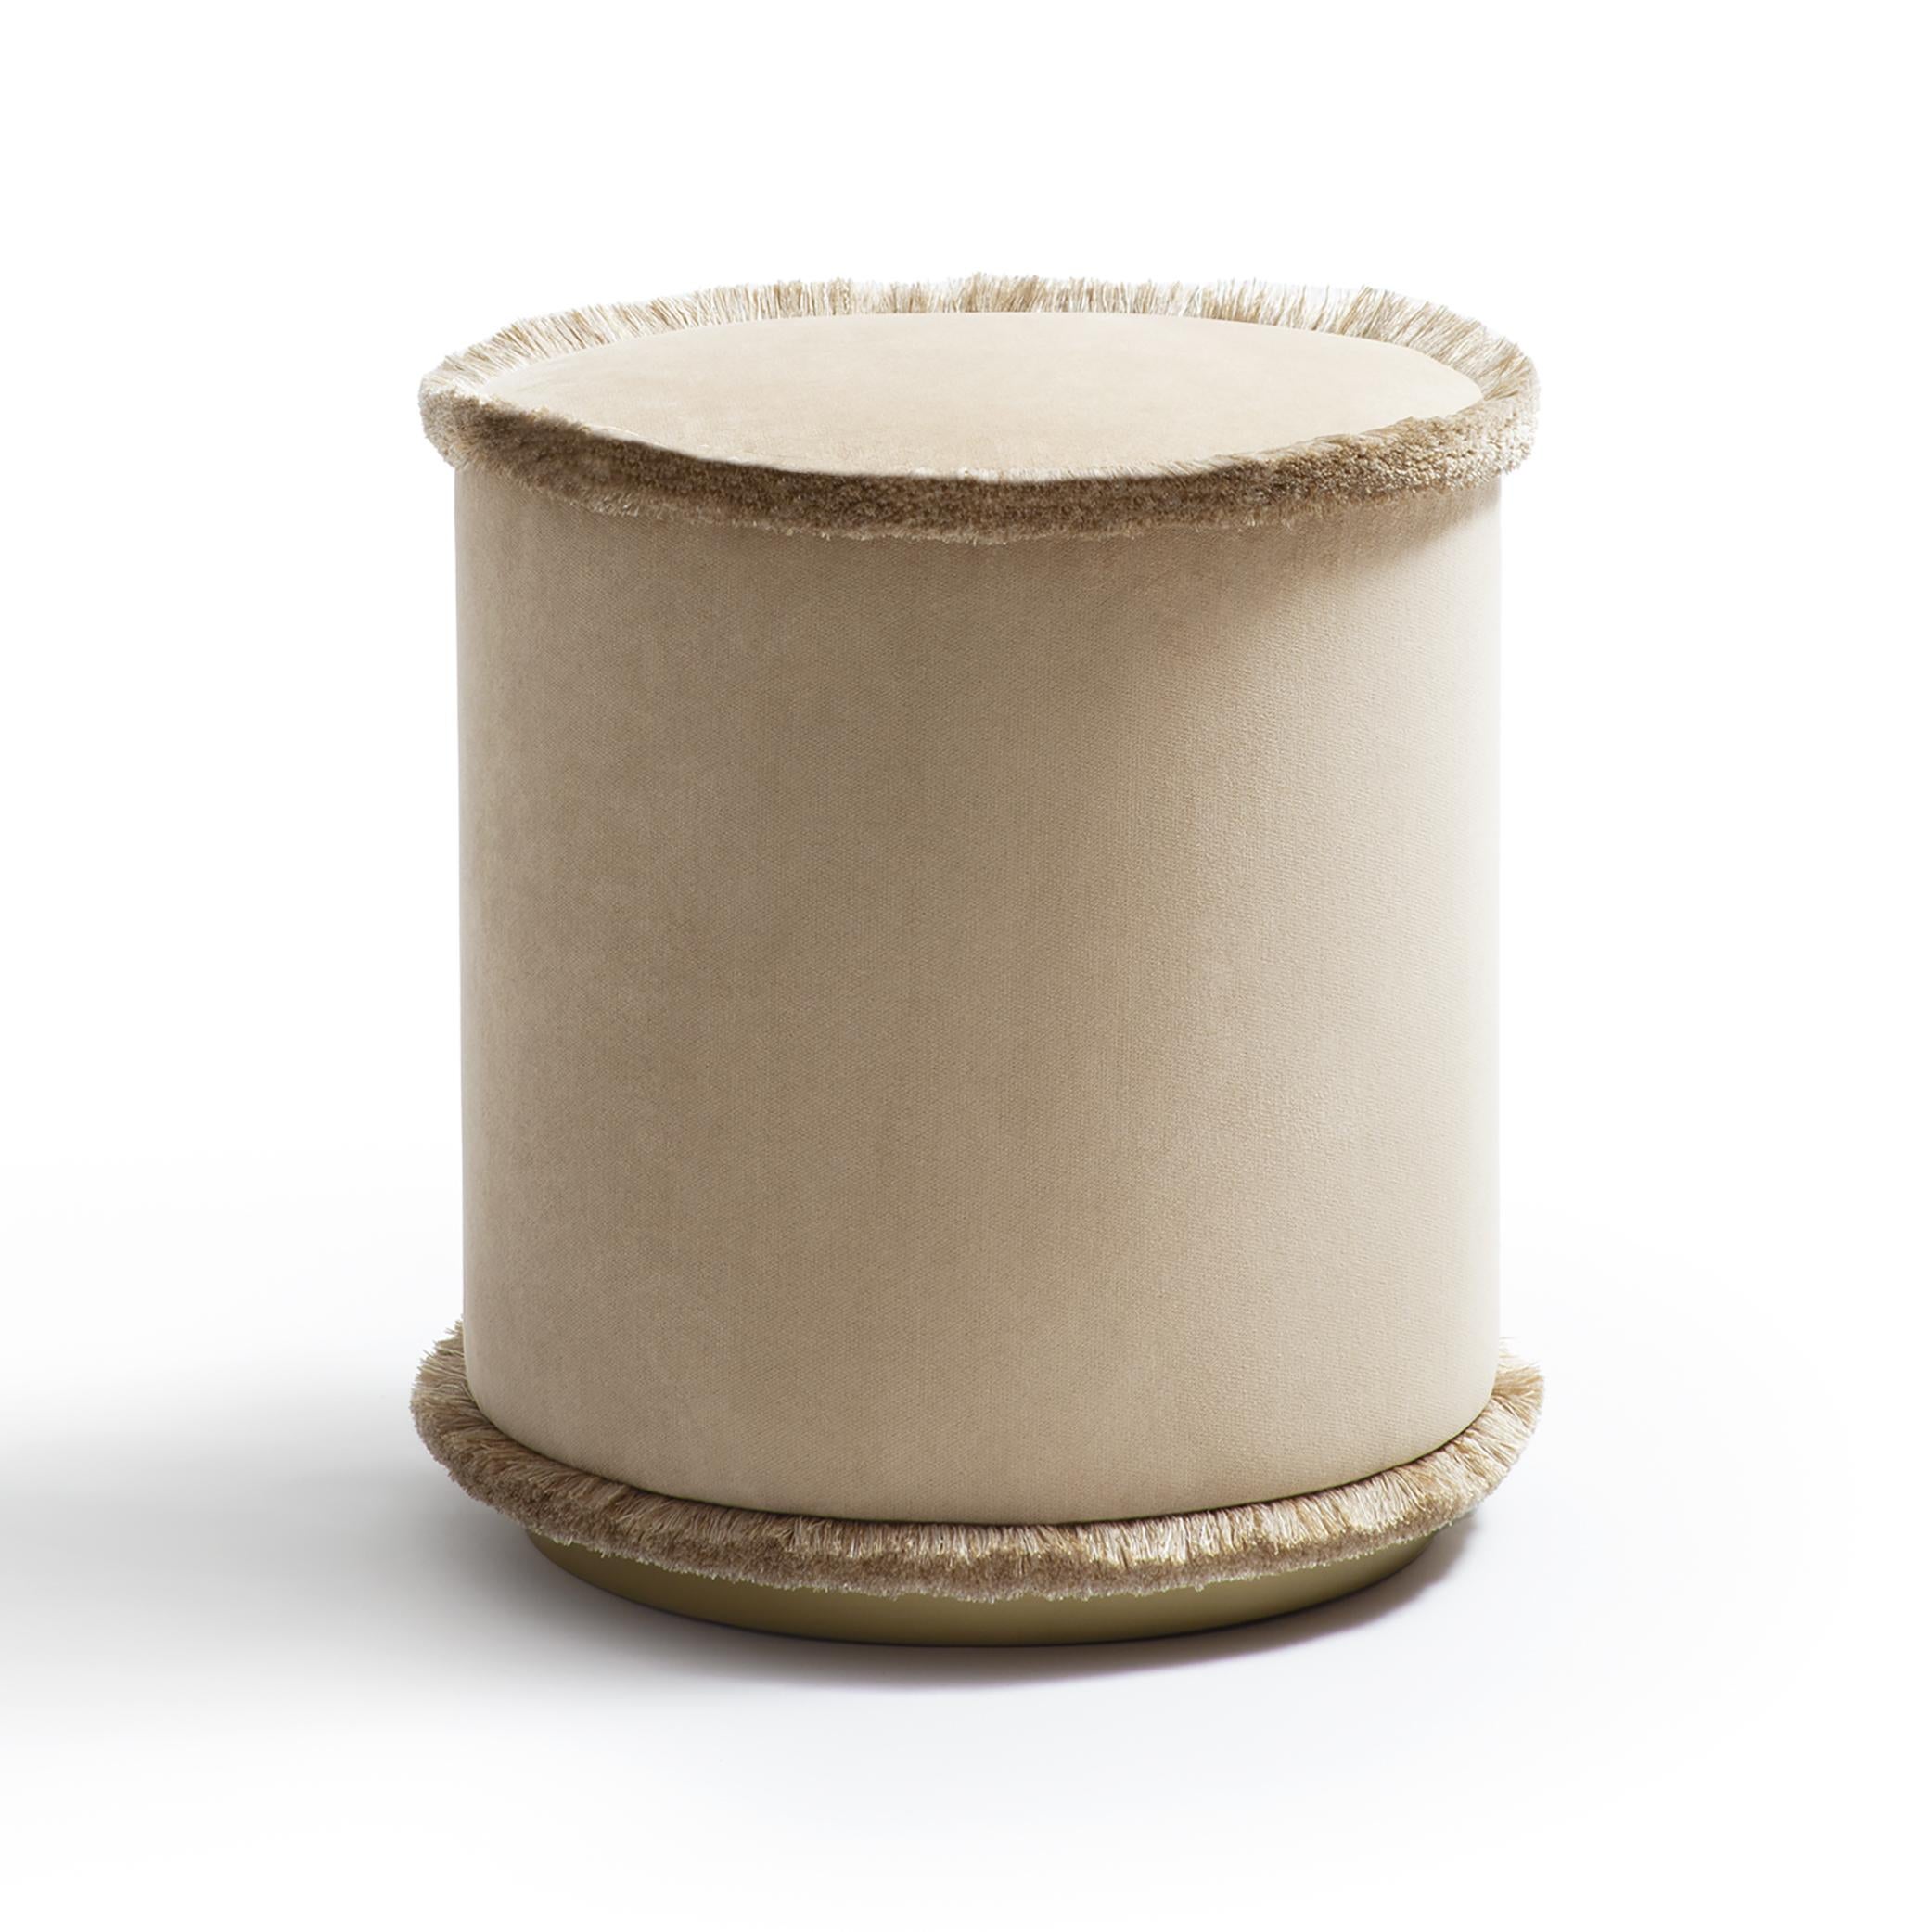 Pouf IL  Tone on Tone est la collection de poufs dans les tons vert, brique, moutarde et beige. Ces poufs raffinés embellissent tout environnement grâce à leur design simple et compact. Le pouf IL, qui confère un attrait naturel à tout espace, est